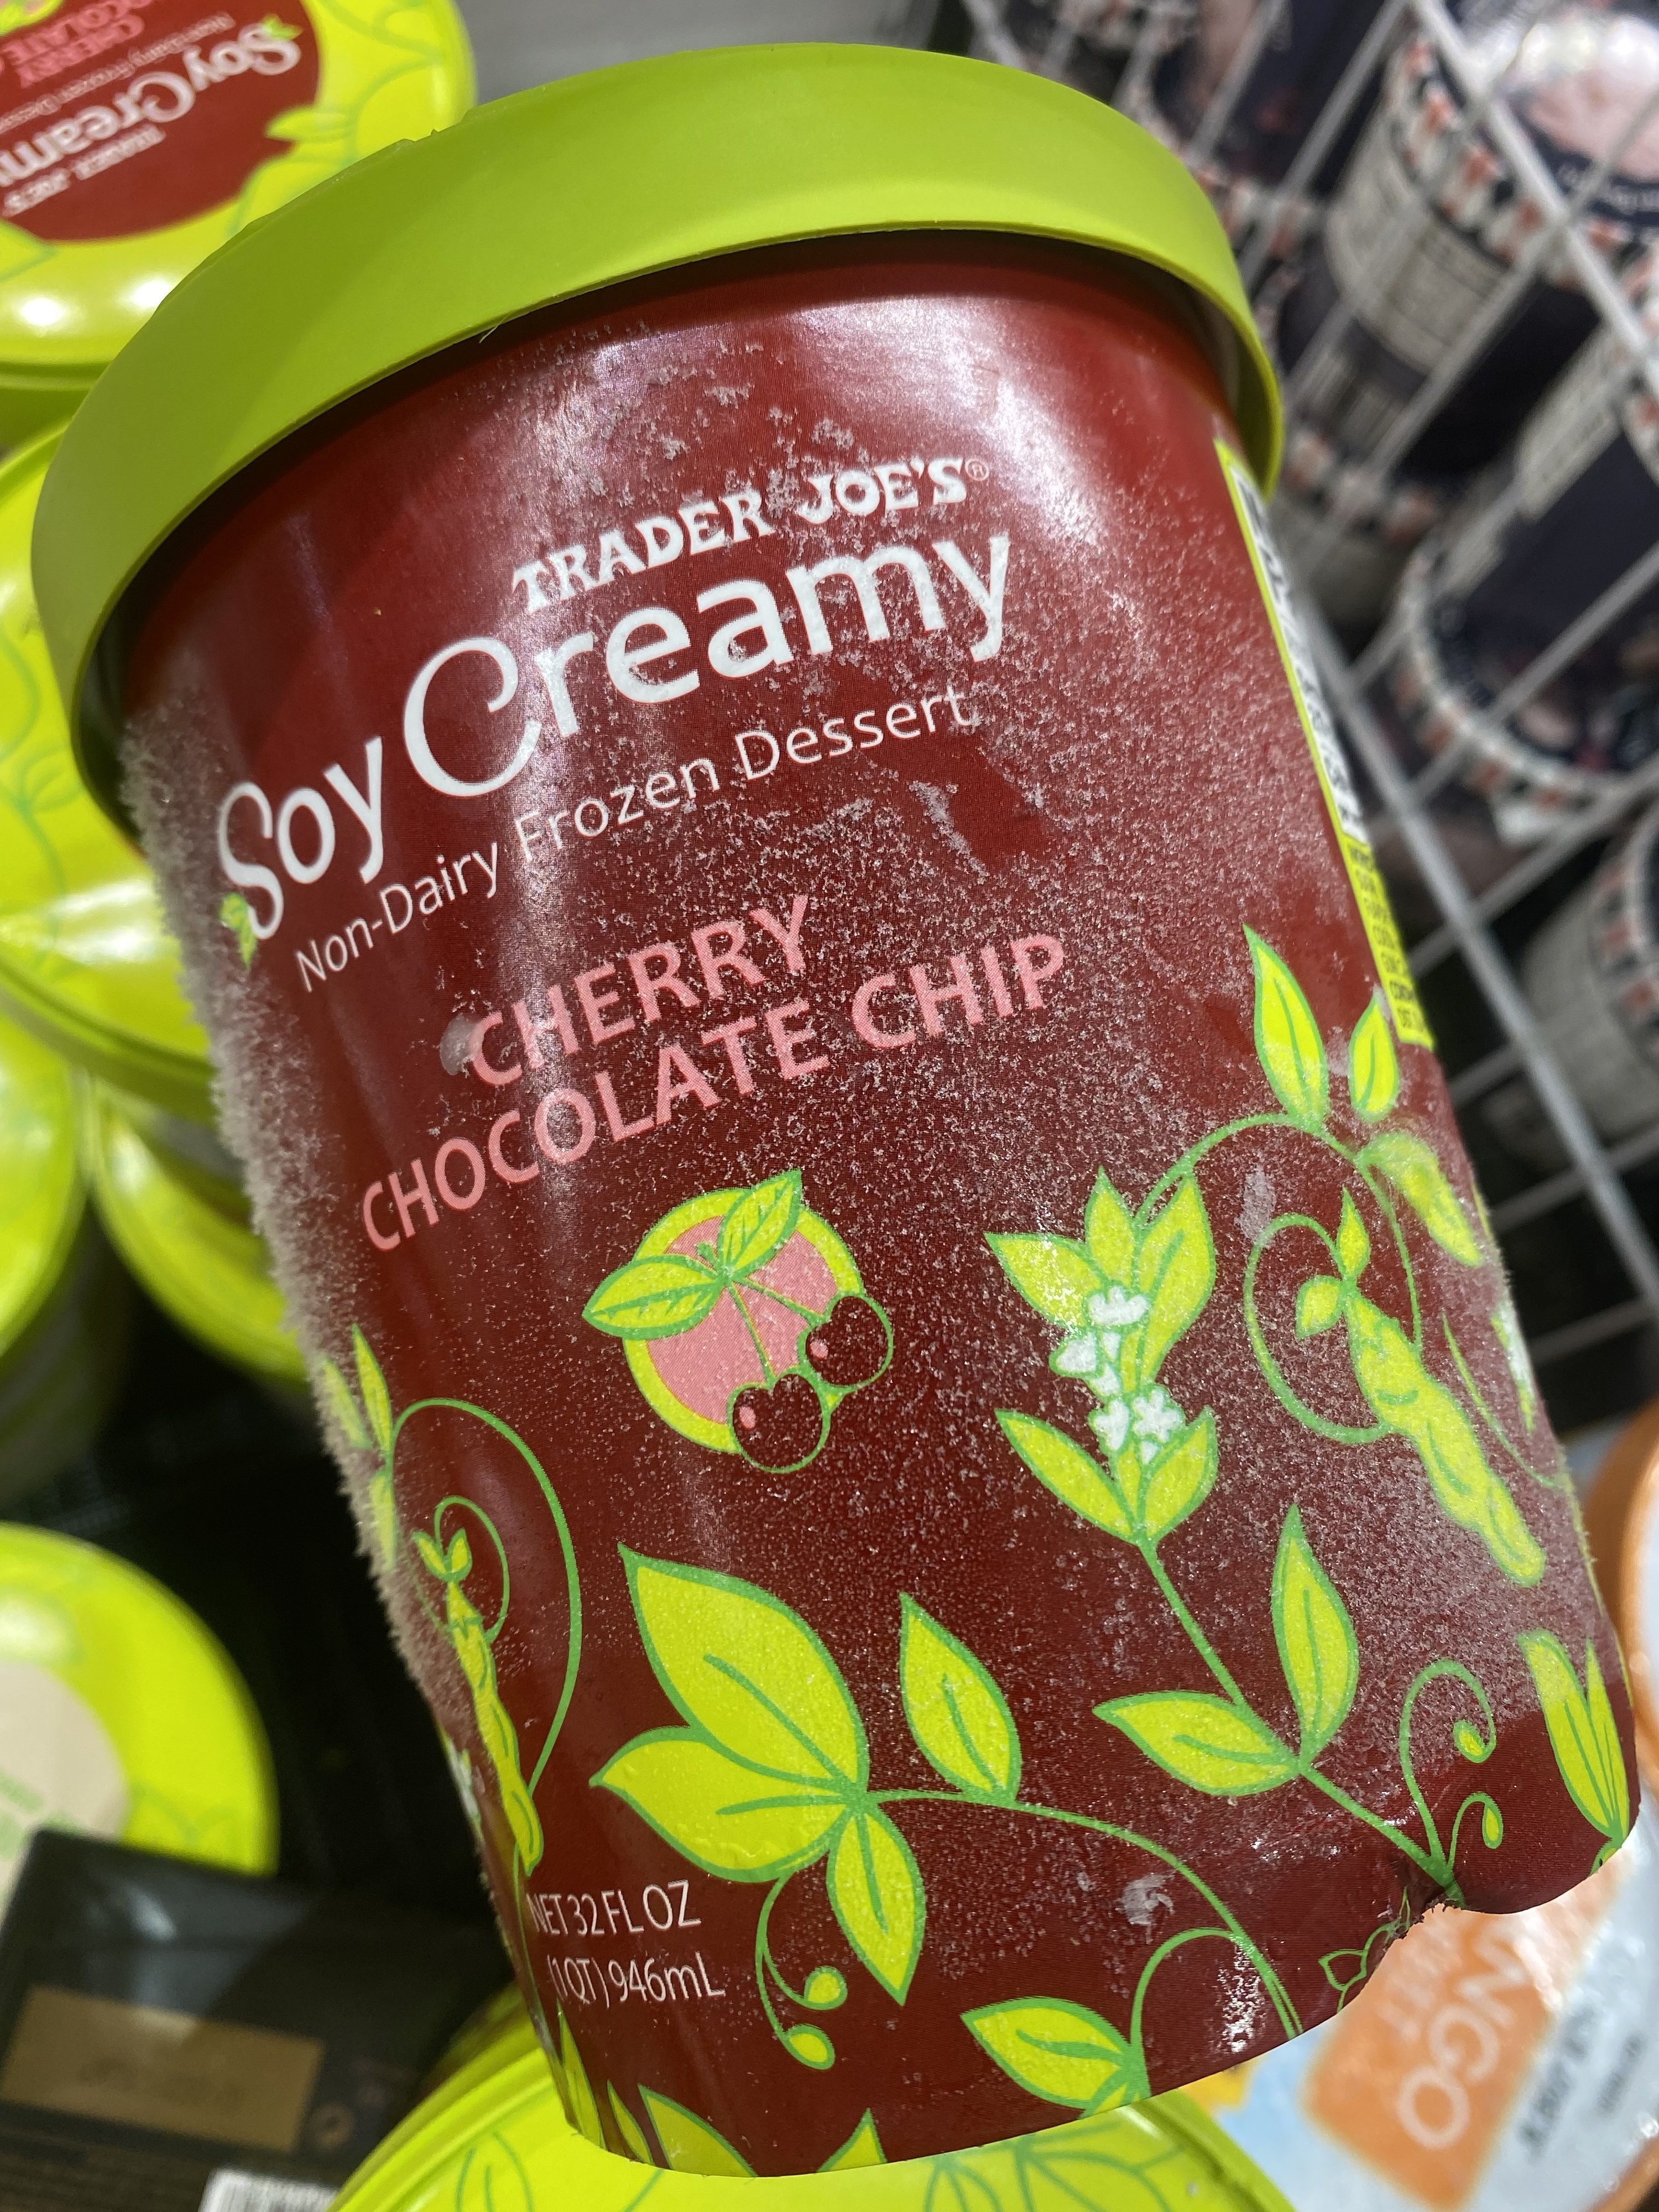 Soy Creamy Non-Dairy Frozen Dessert Cherry Chocolate Chip